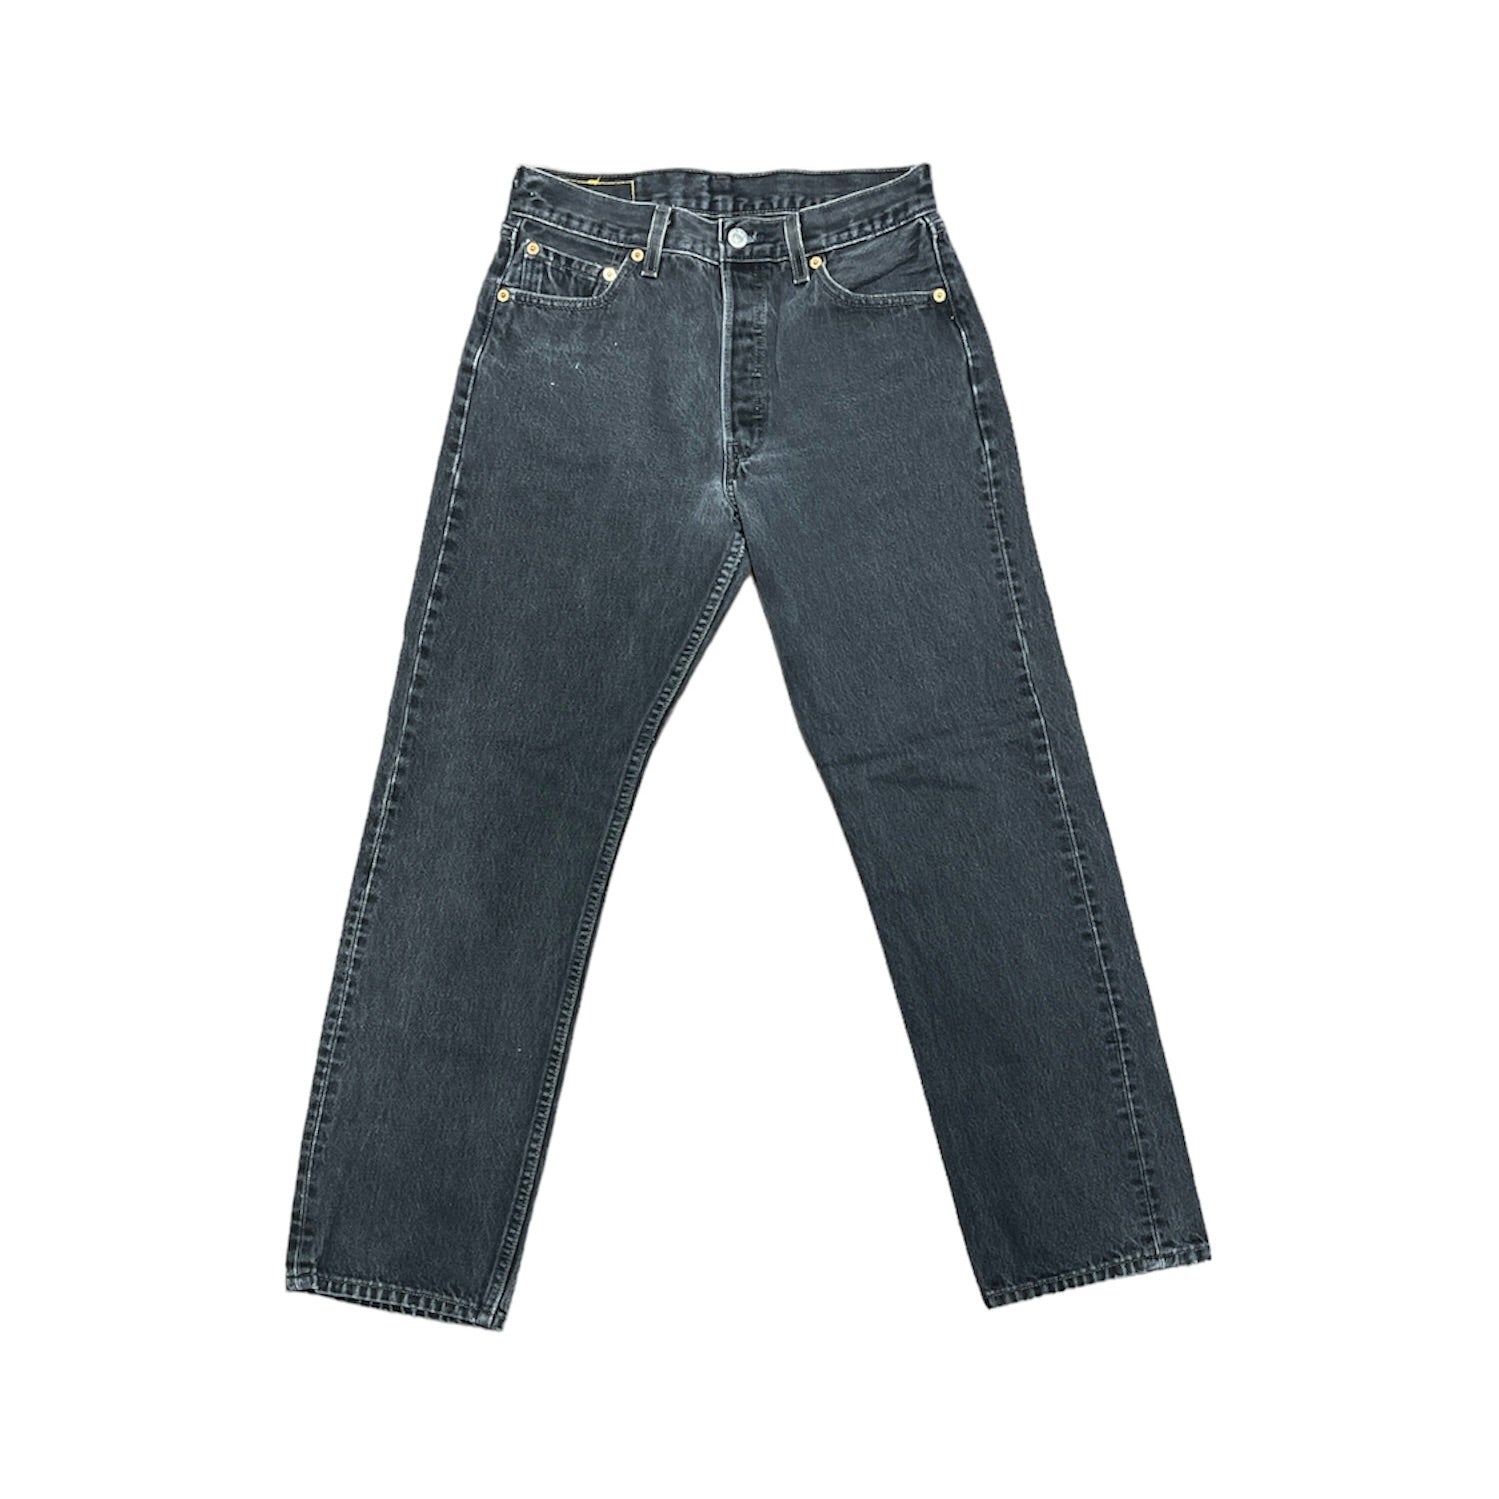 Vintage Levis 501 Jeans (W30/L30)